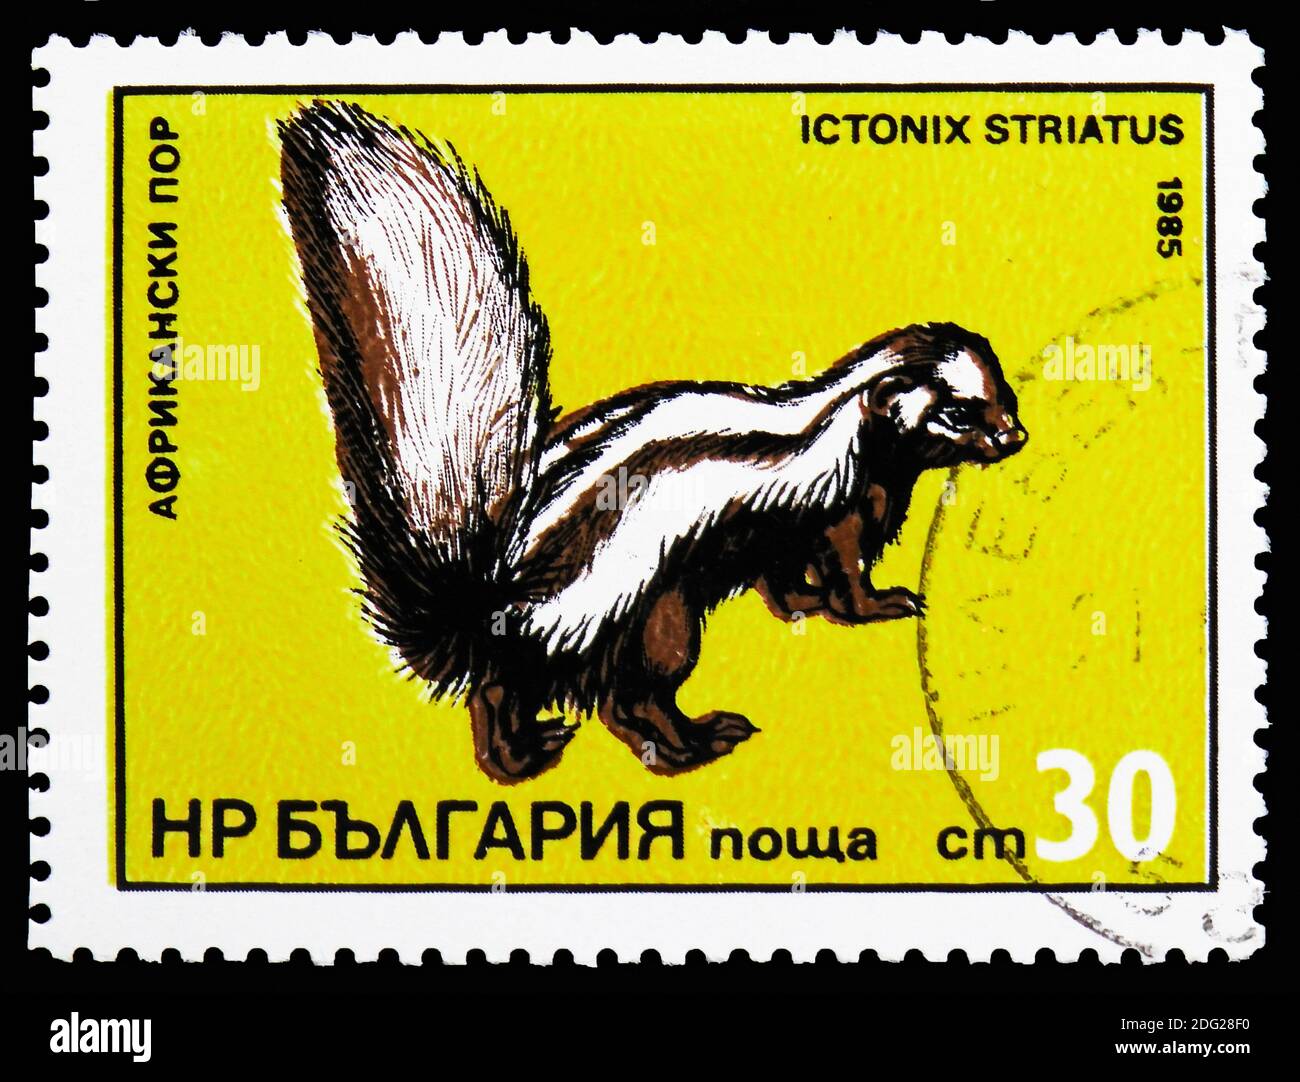 MOSCOU, RUSSIE - 21 OCTOBRE 2018 : un timbre imprimé en Bulgarie montre Zorilla ou Polecat à rayures (Ictonyx striatus), une série de prédateurs exotiques, vers 1985 Banque D'Images